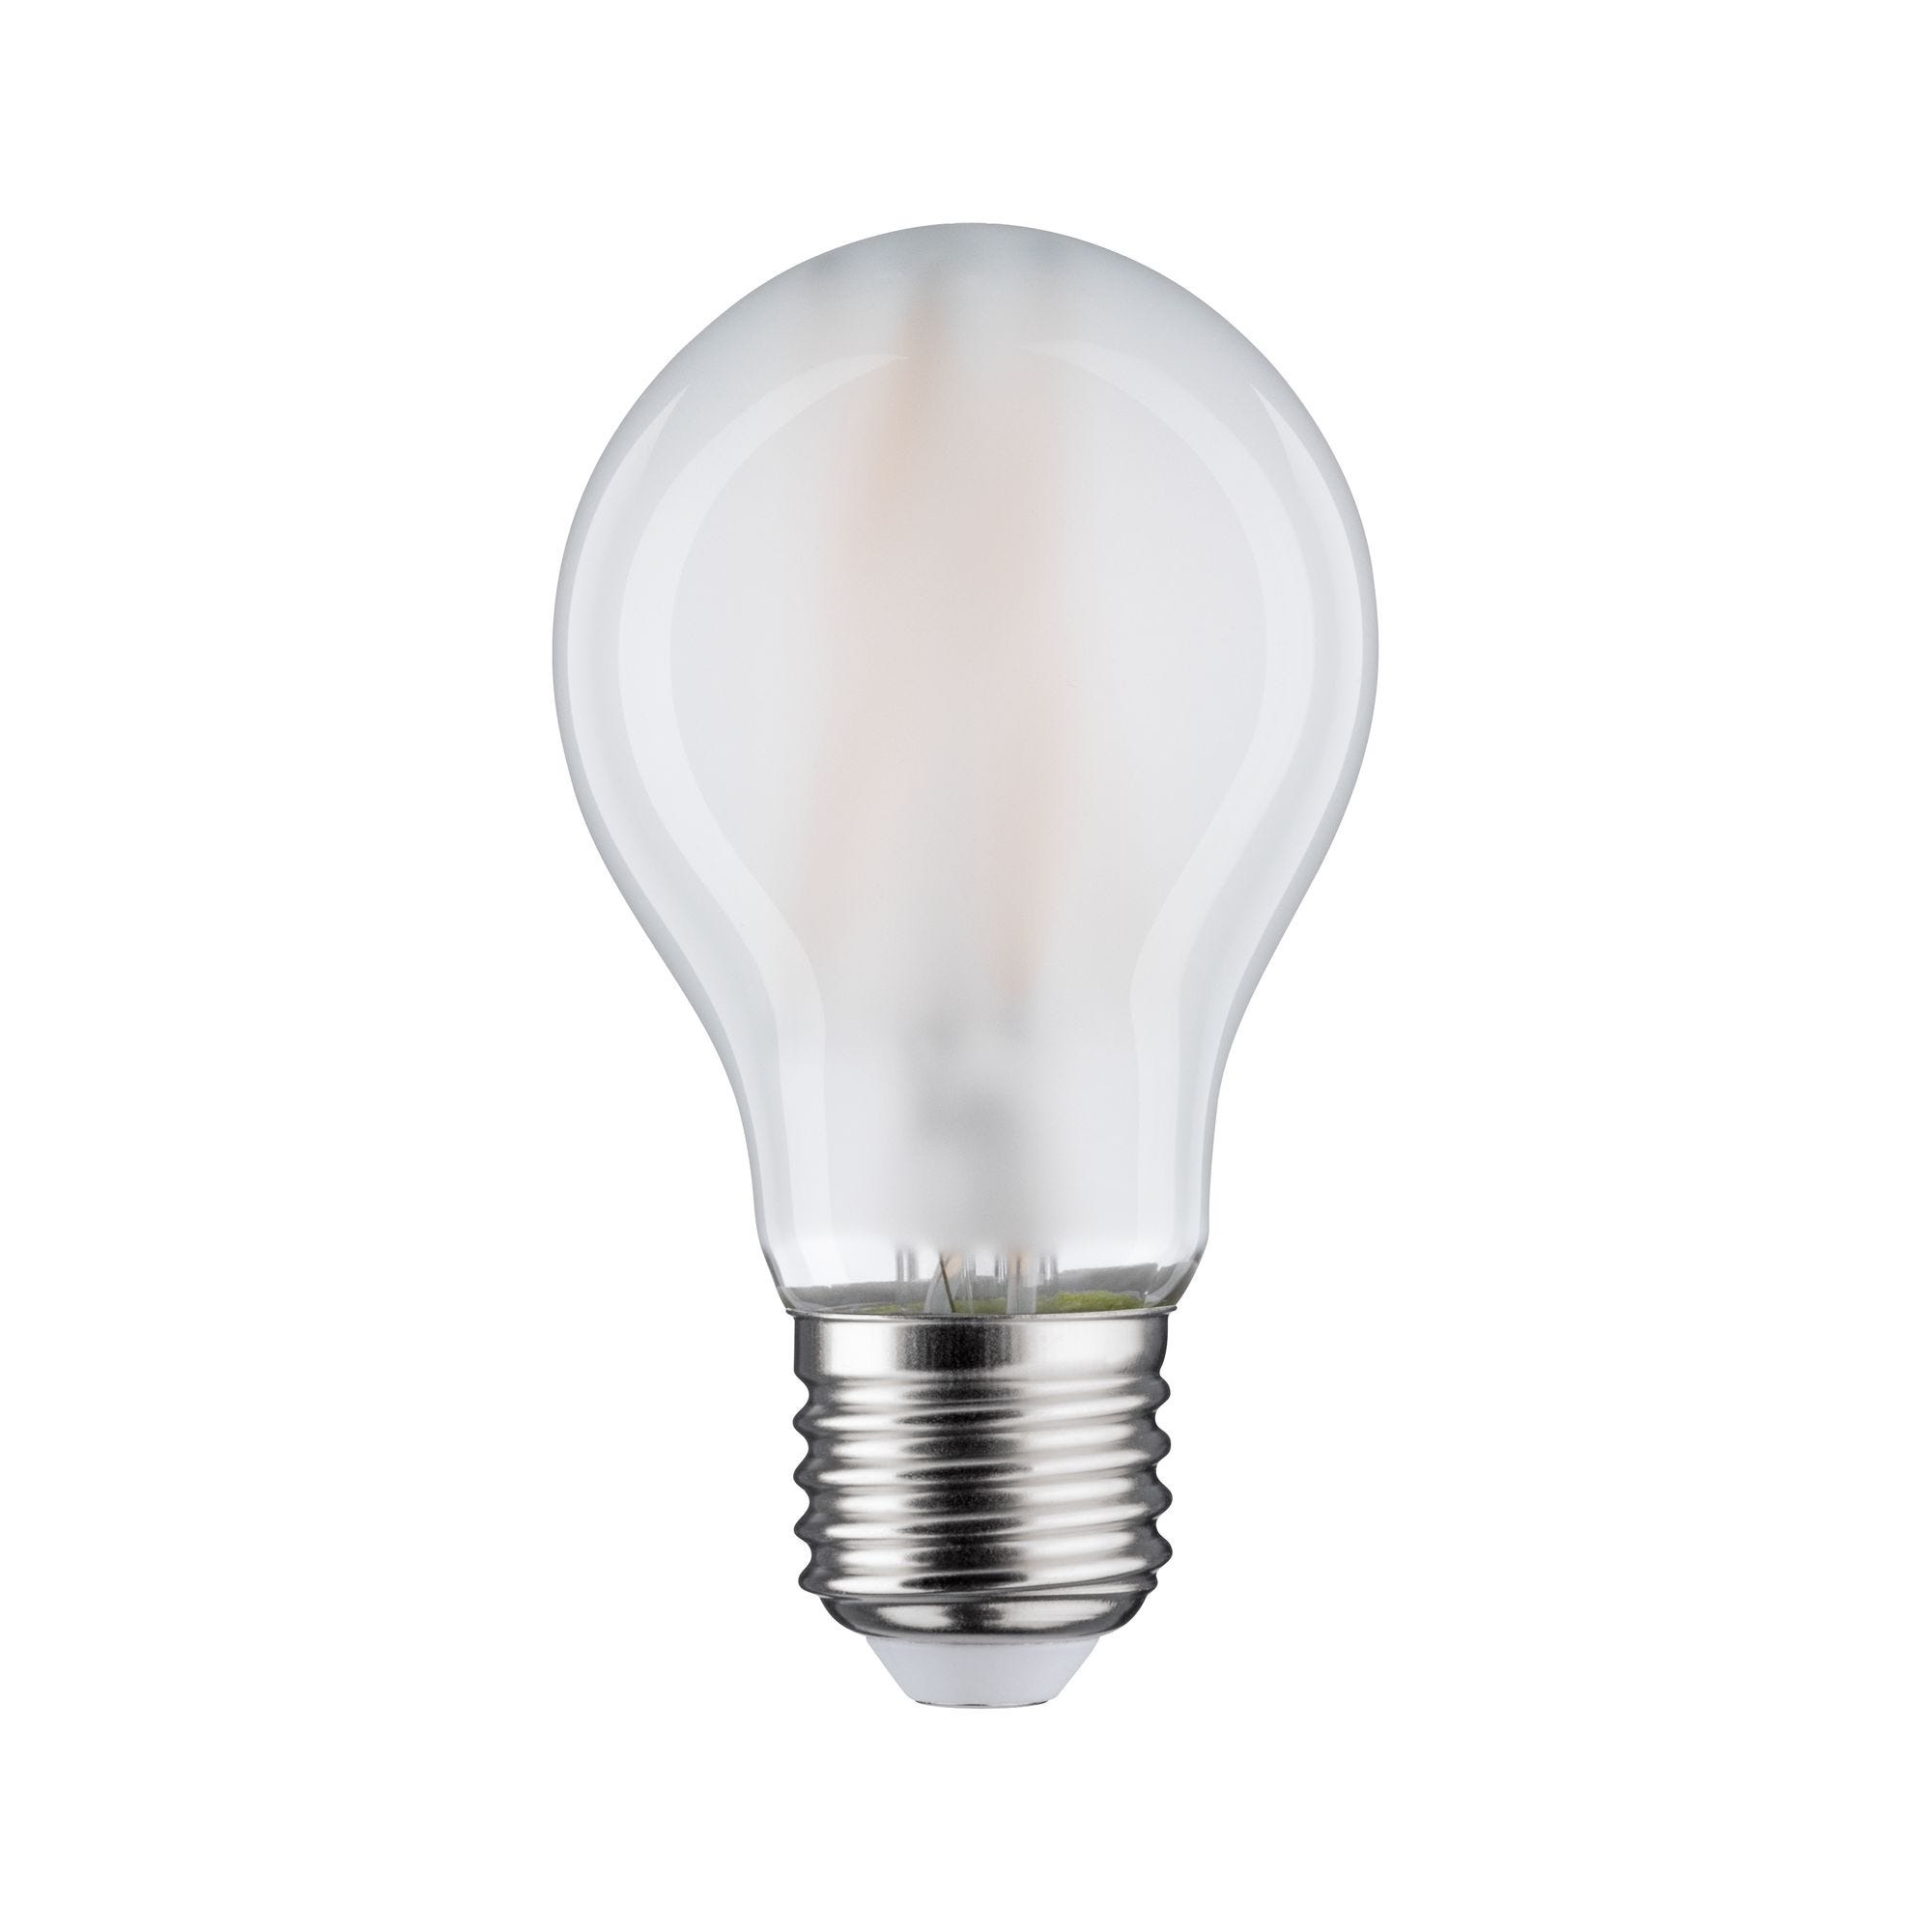 Ampoule LED E27 Ampoule LED Ampoule MaïS 16W 99LEDs 5730 Ampoule Blanche  Lampe LED la LumièRe